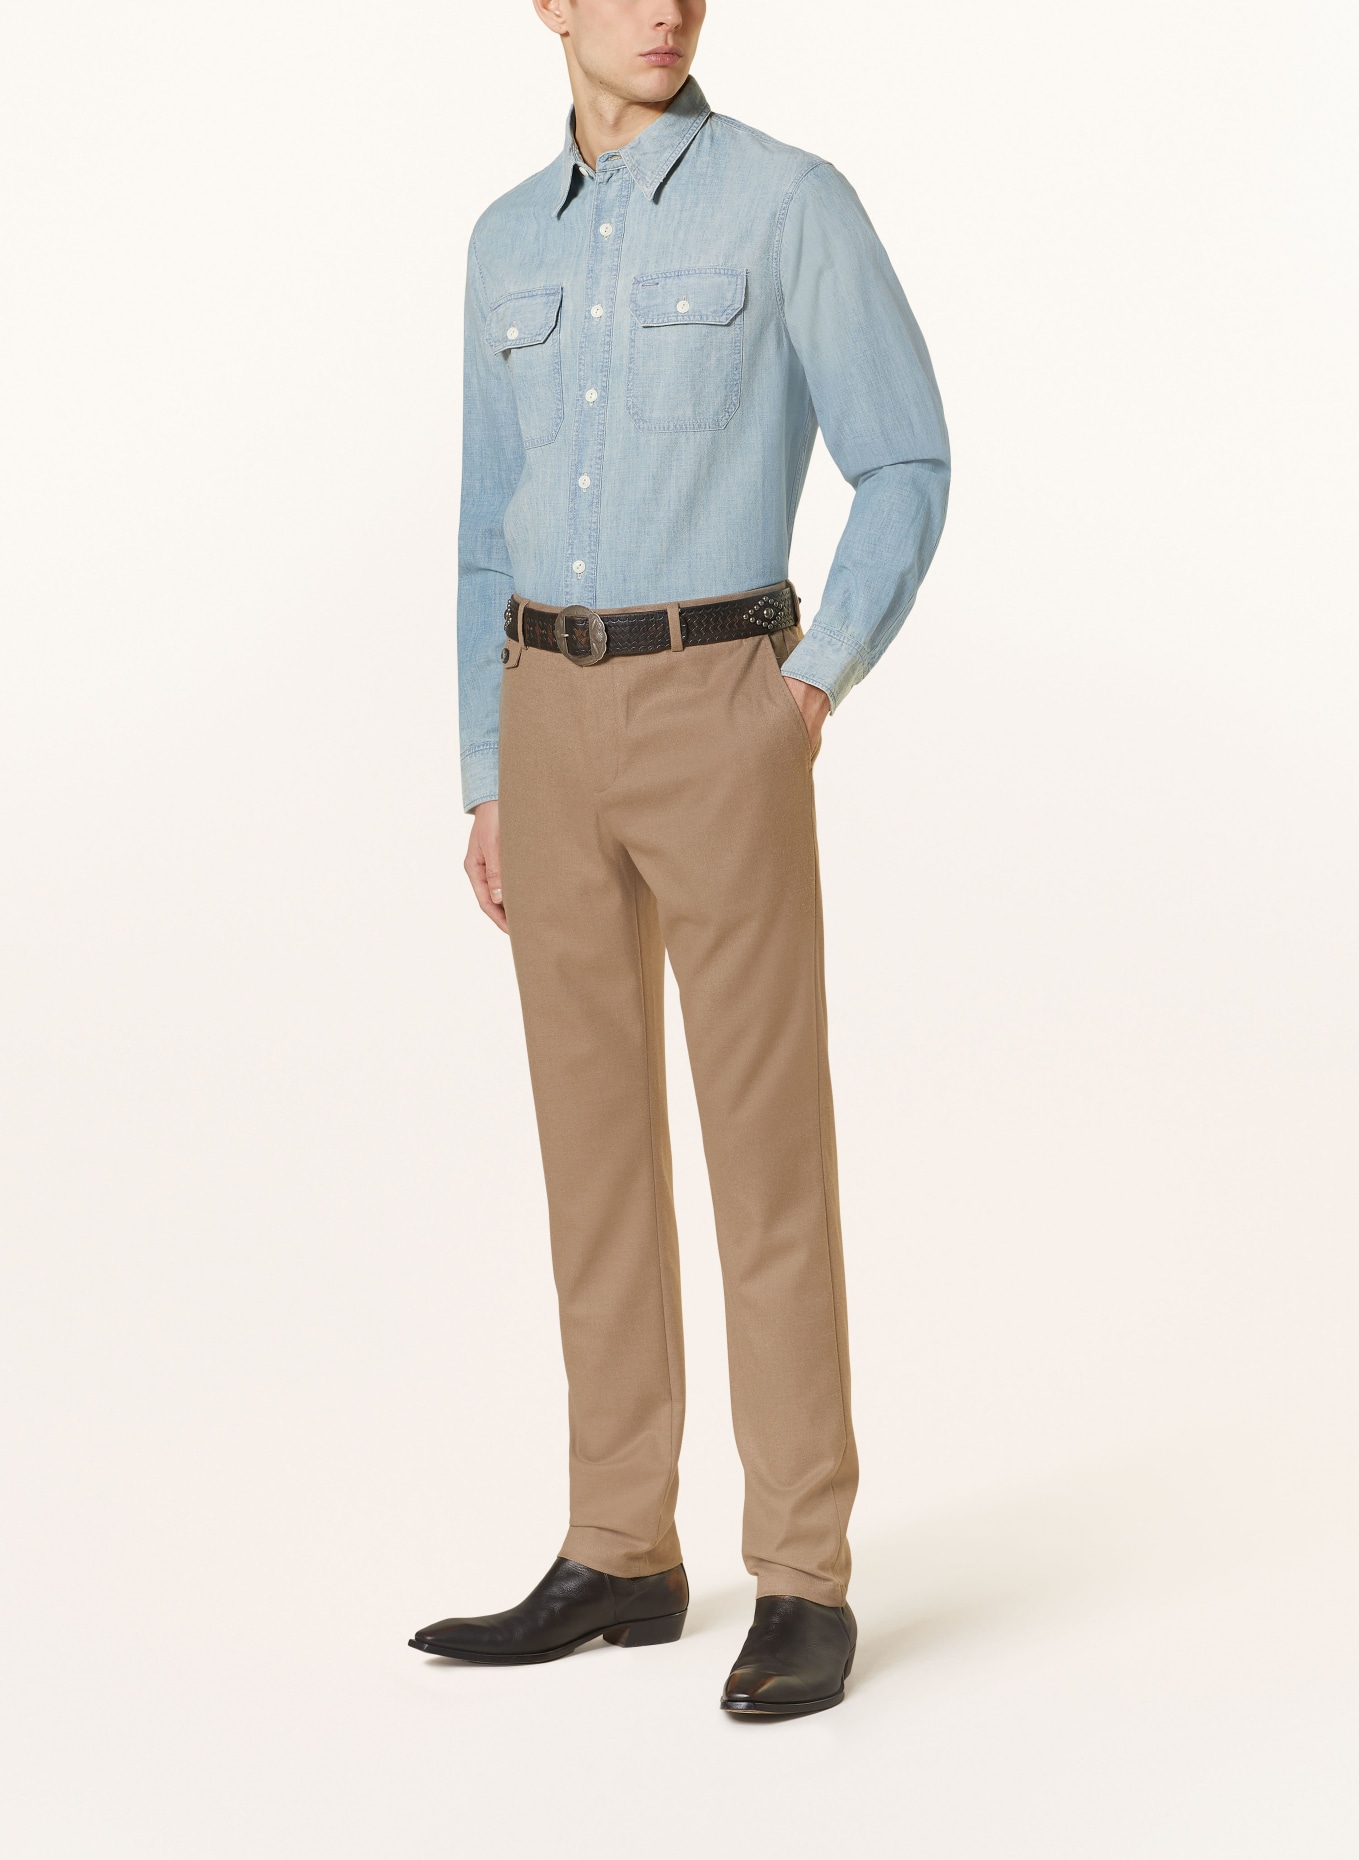 RRL Shirt regular fit in denim look, Color: LIGHT BLUE (Image 2)